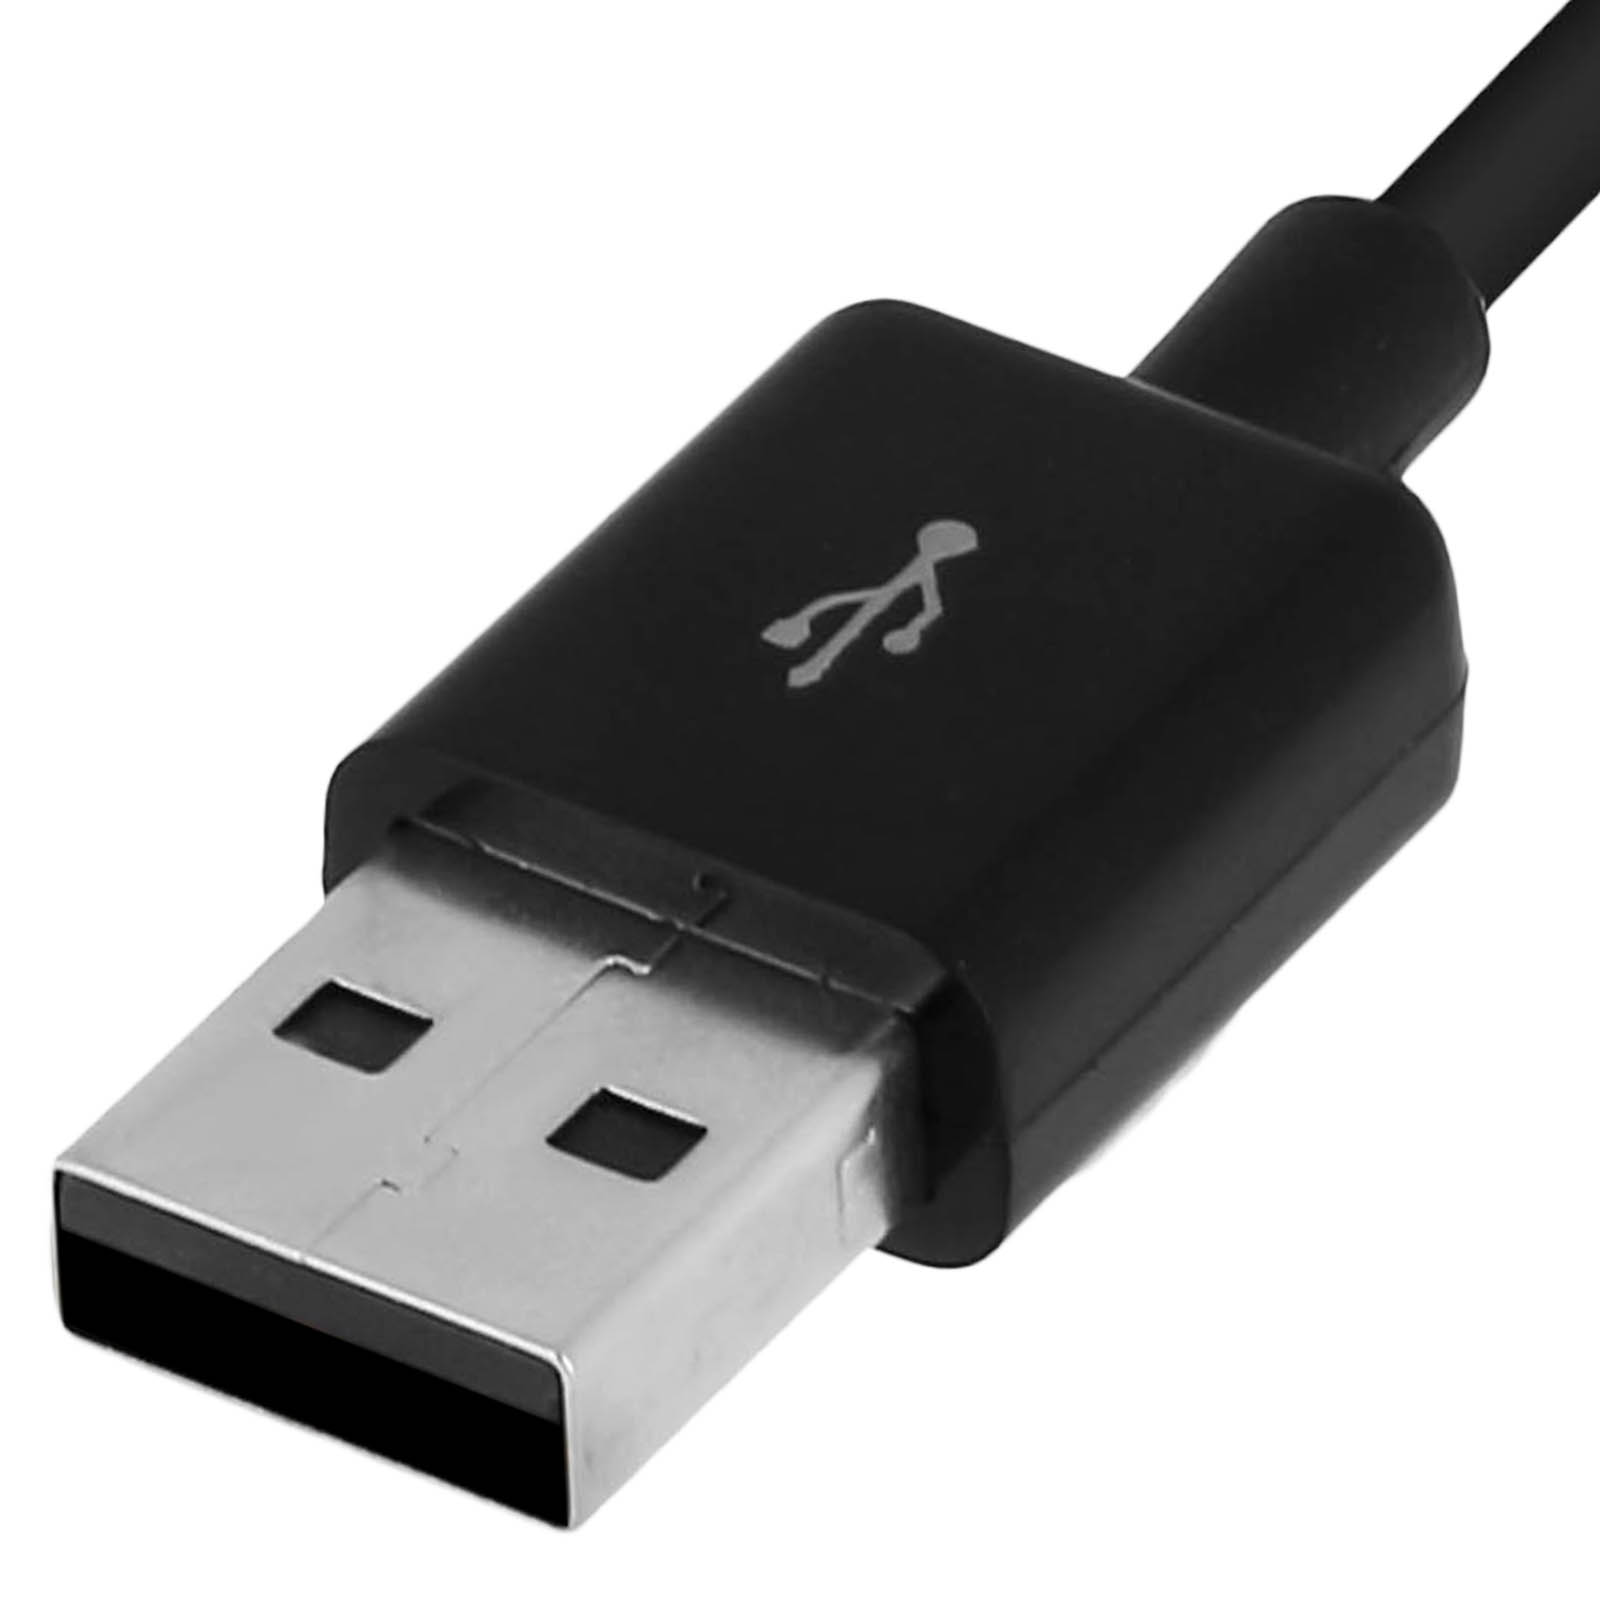 SAMSUNG Netzteil, Netzteile Wand-Ladegerät 1A Micro-USB Samsung, Schwarz